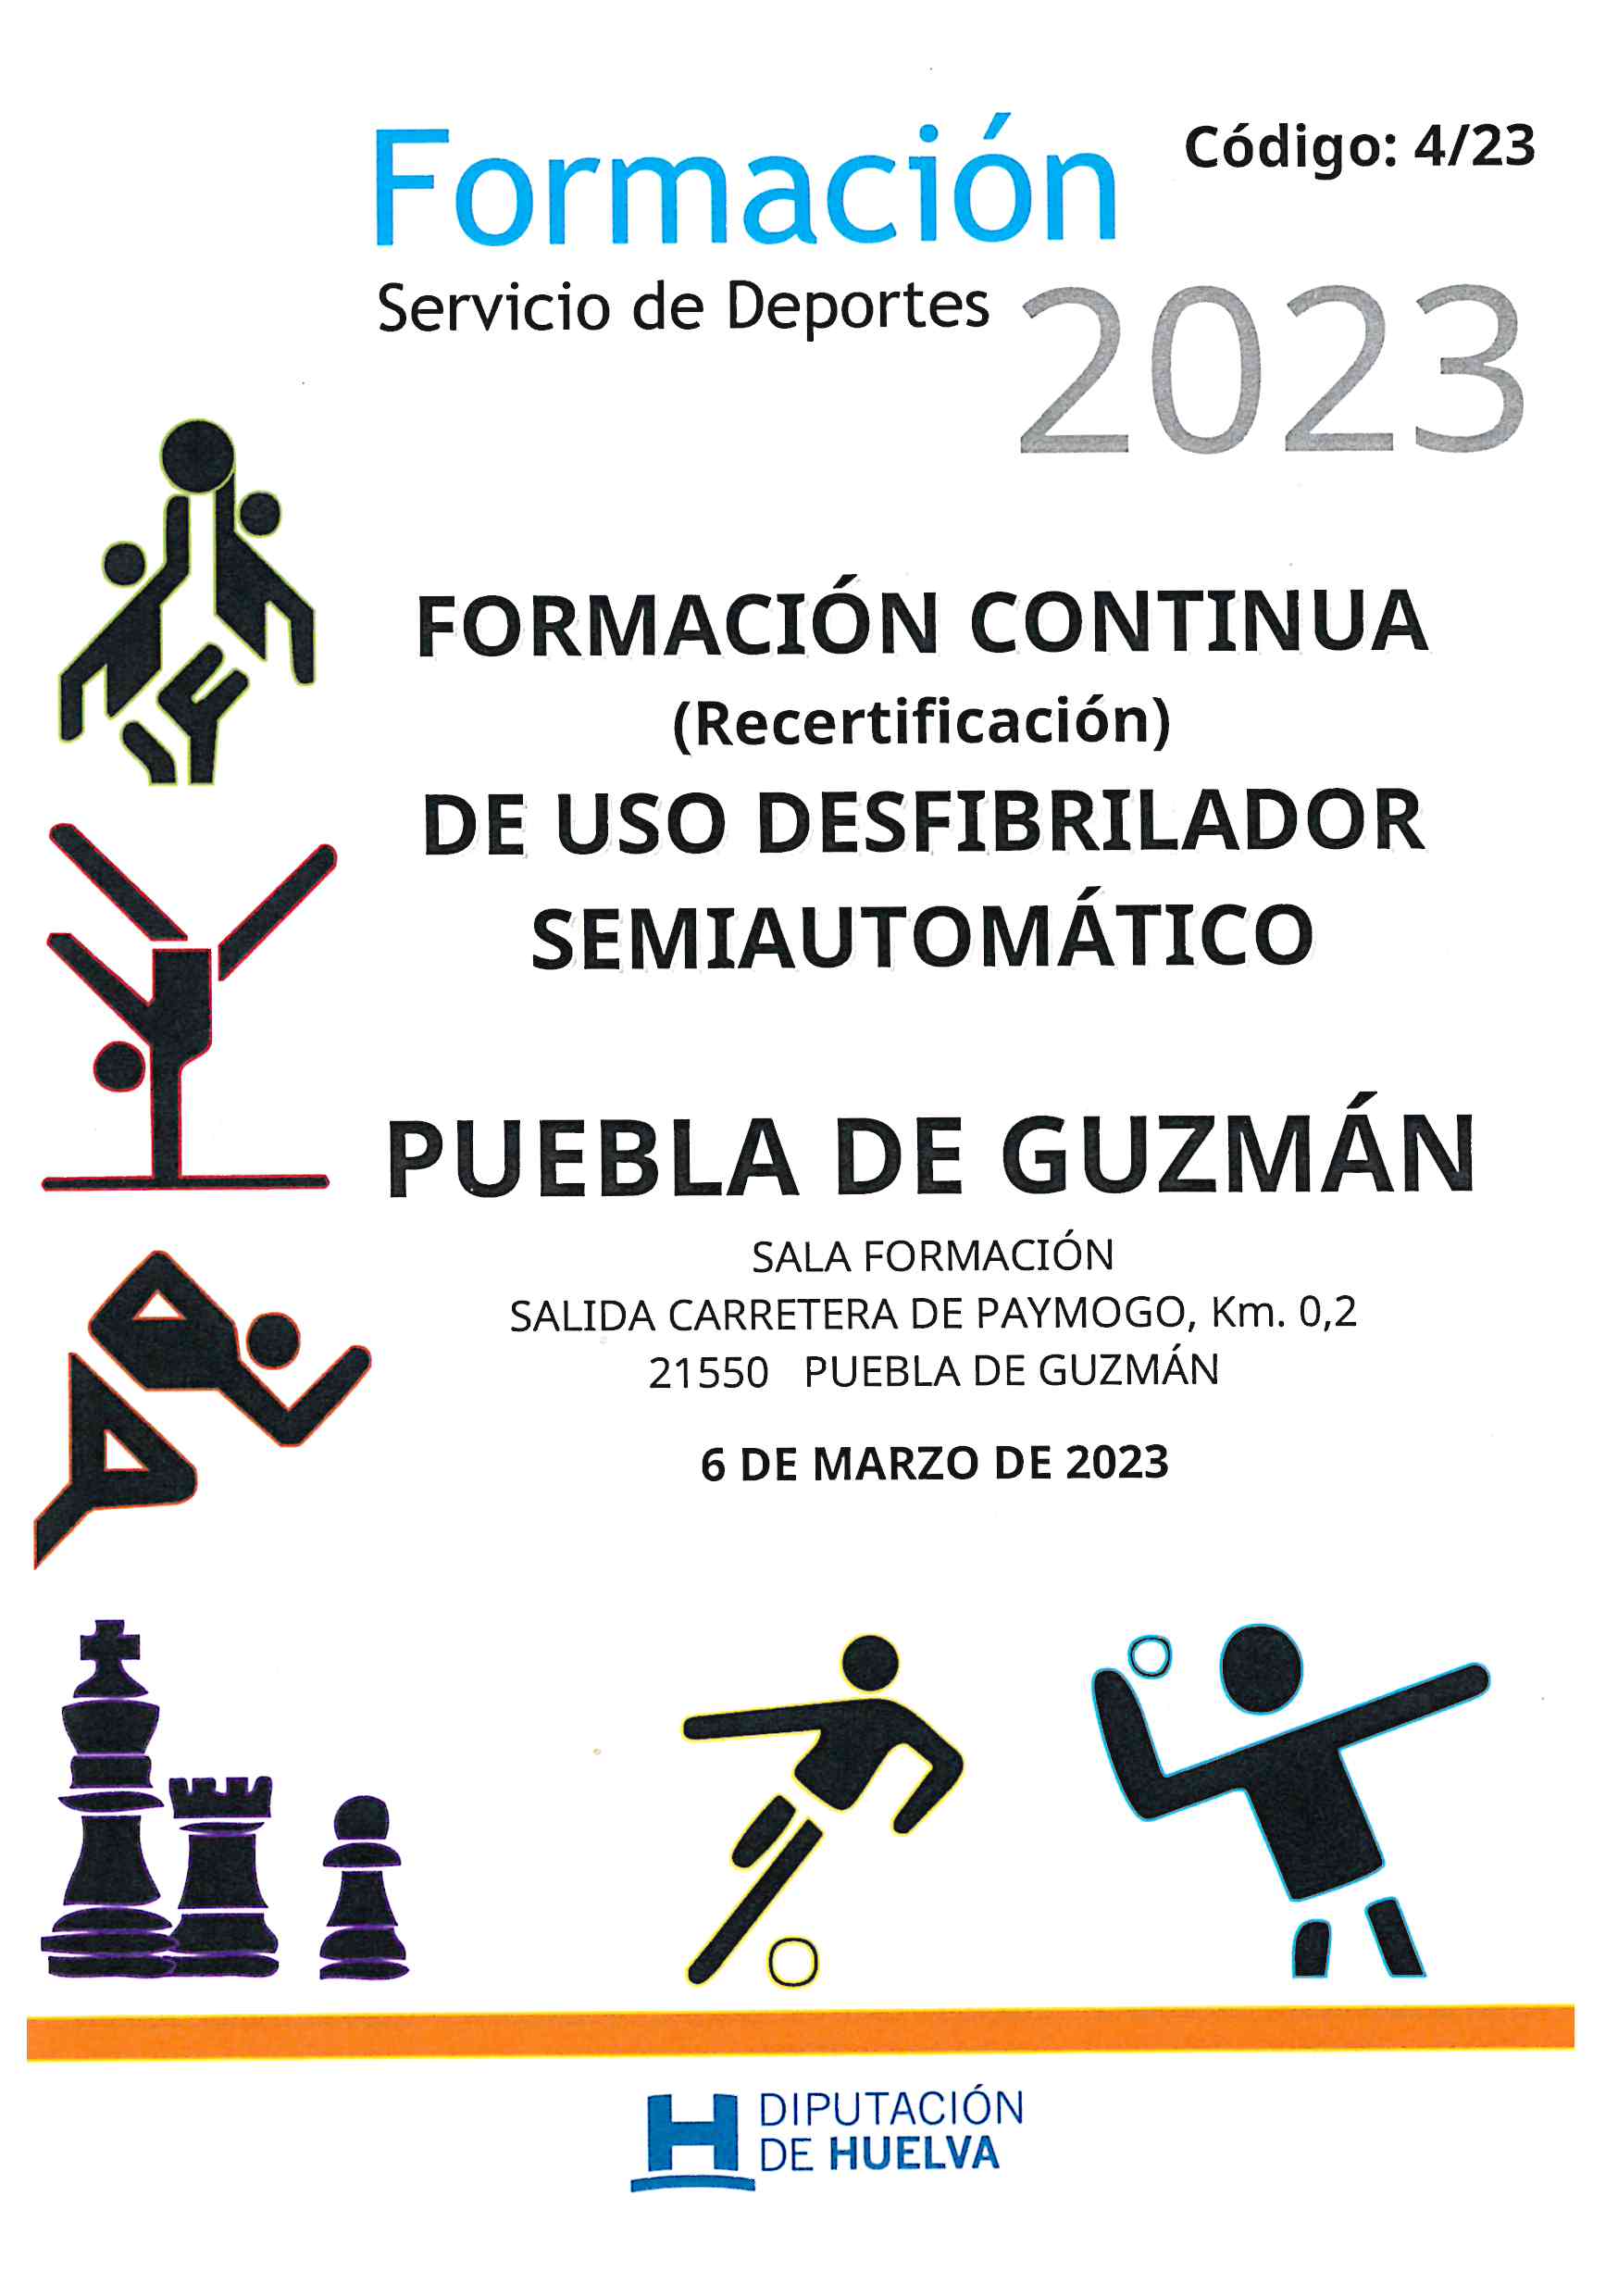 2023 Carátula 3 F.Continua Desfibrilador Puebla de Guzmán